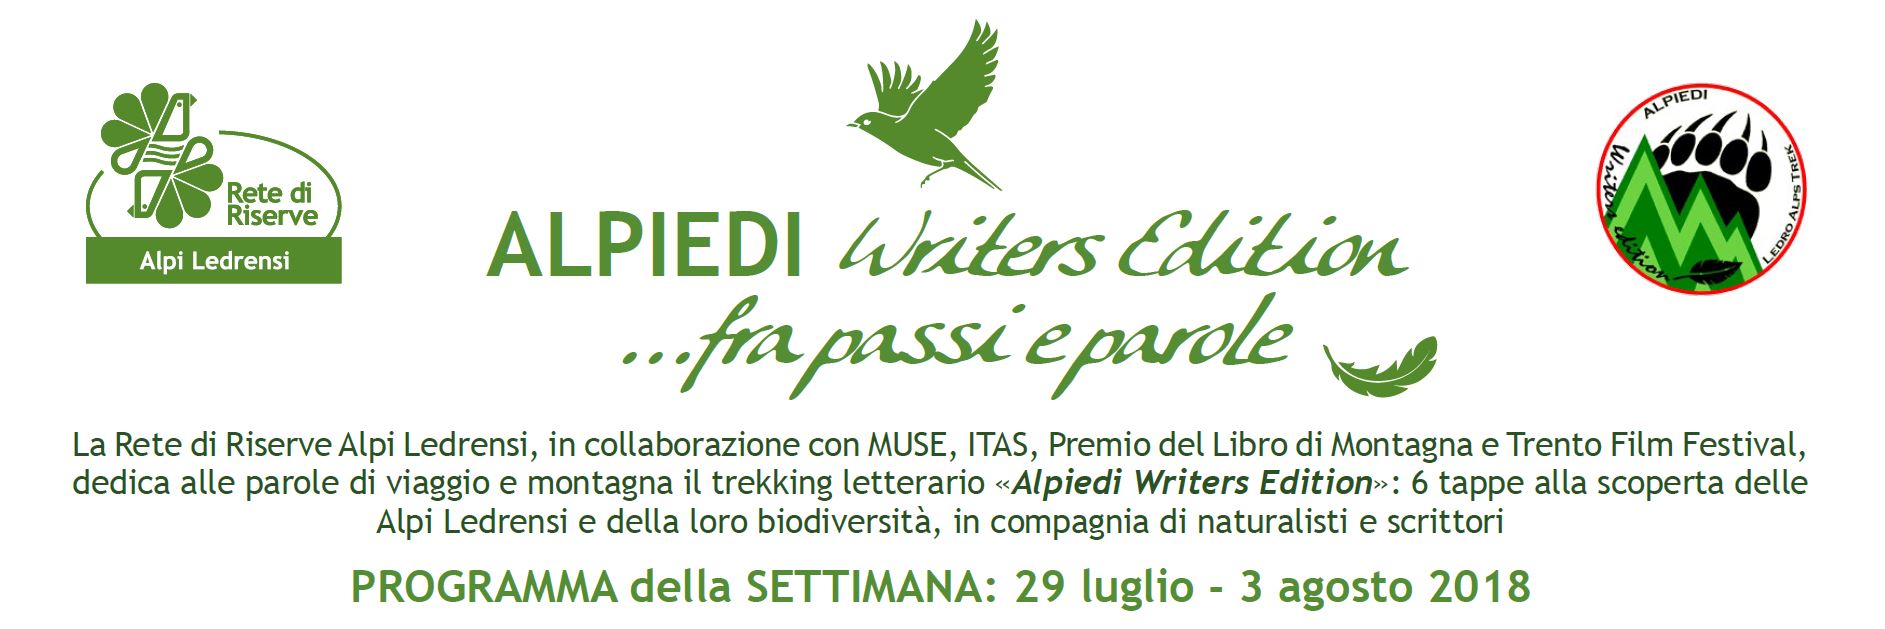 ALPIEDI - Writers Edition